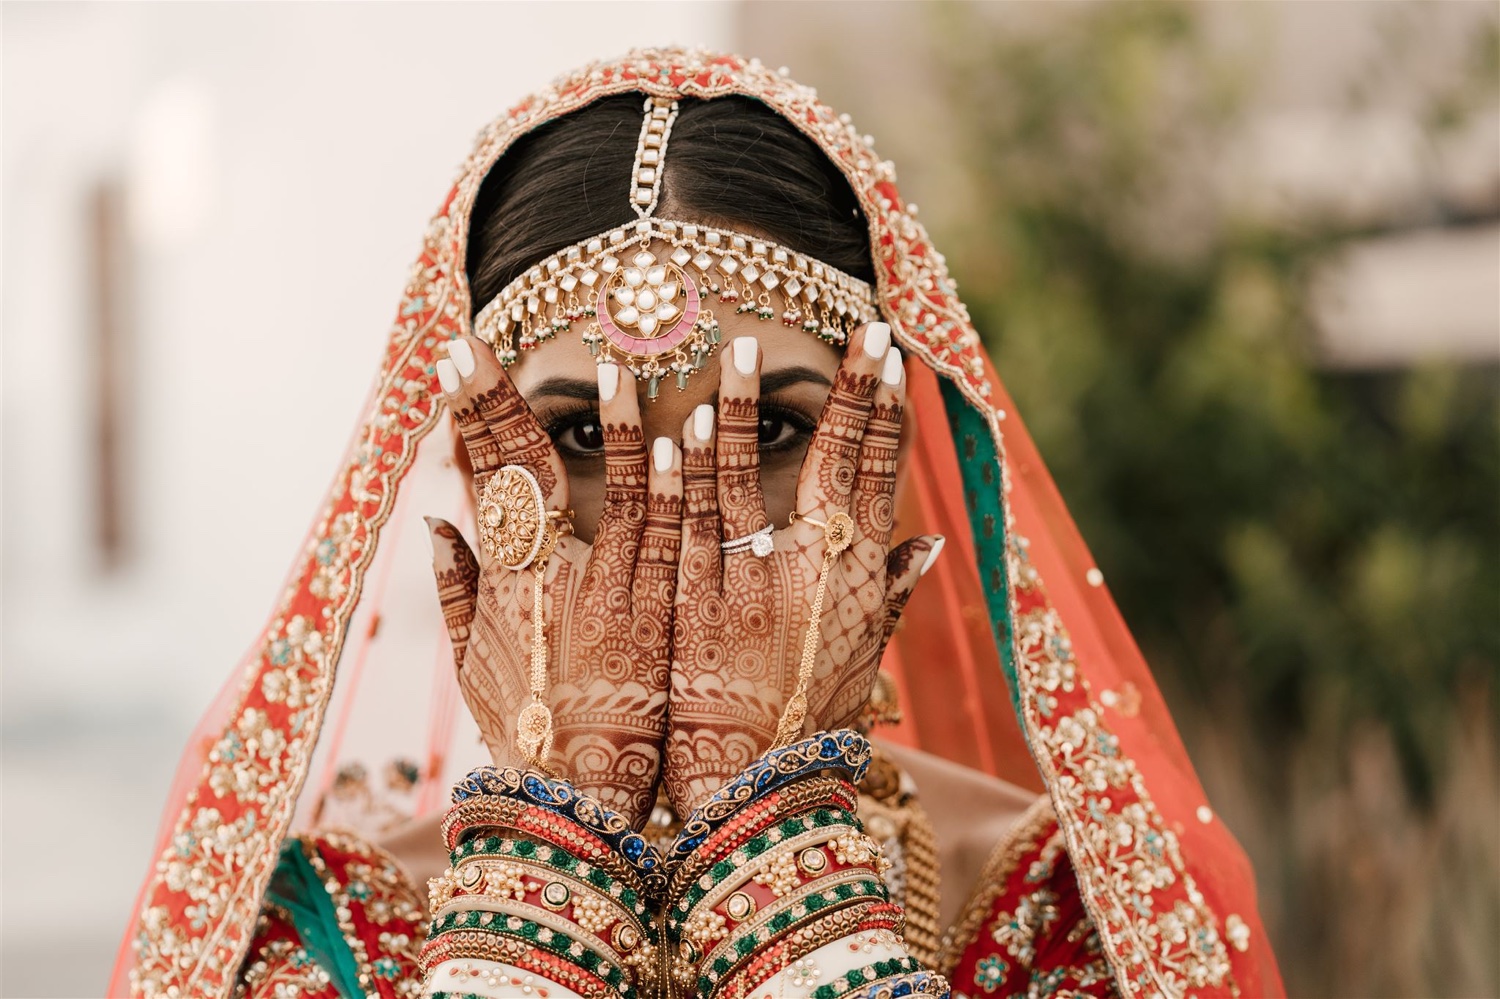 700+ Free Indian Wedding & Indian Images - Pixabay